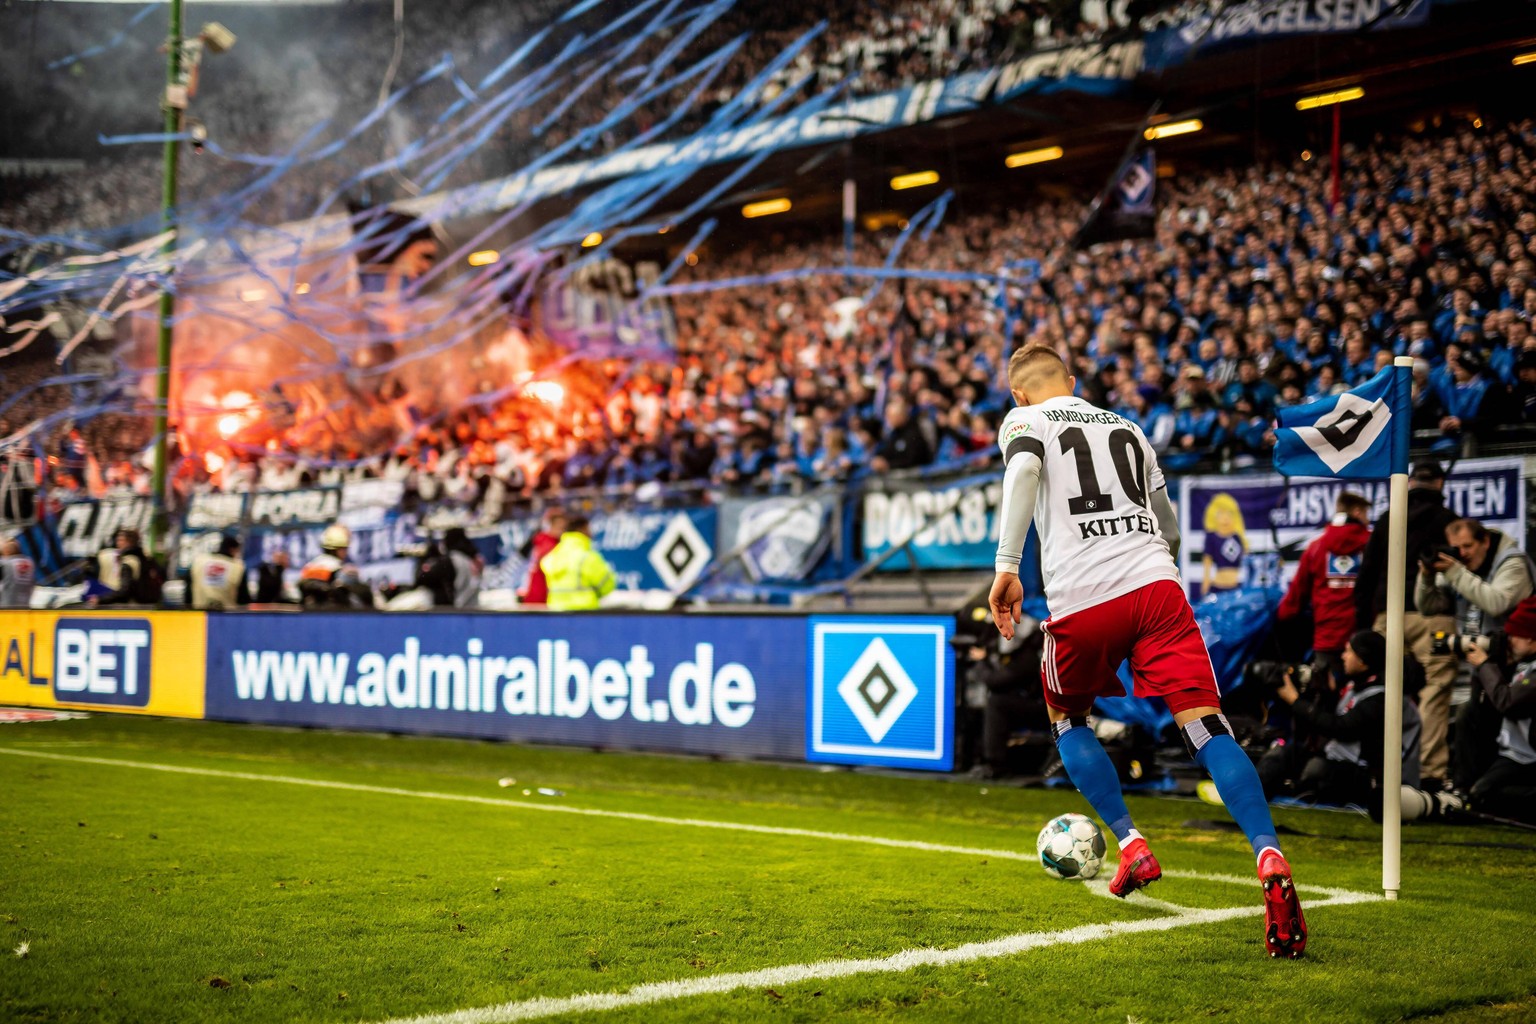 Fußball und erhitzte Stimmung gehören zu Derbys dazu. So wie hier in Hamburg zwischen dem HSV und St. Pauli im Februar 2020.